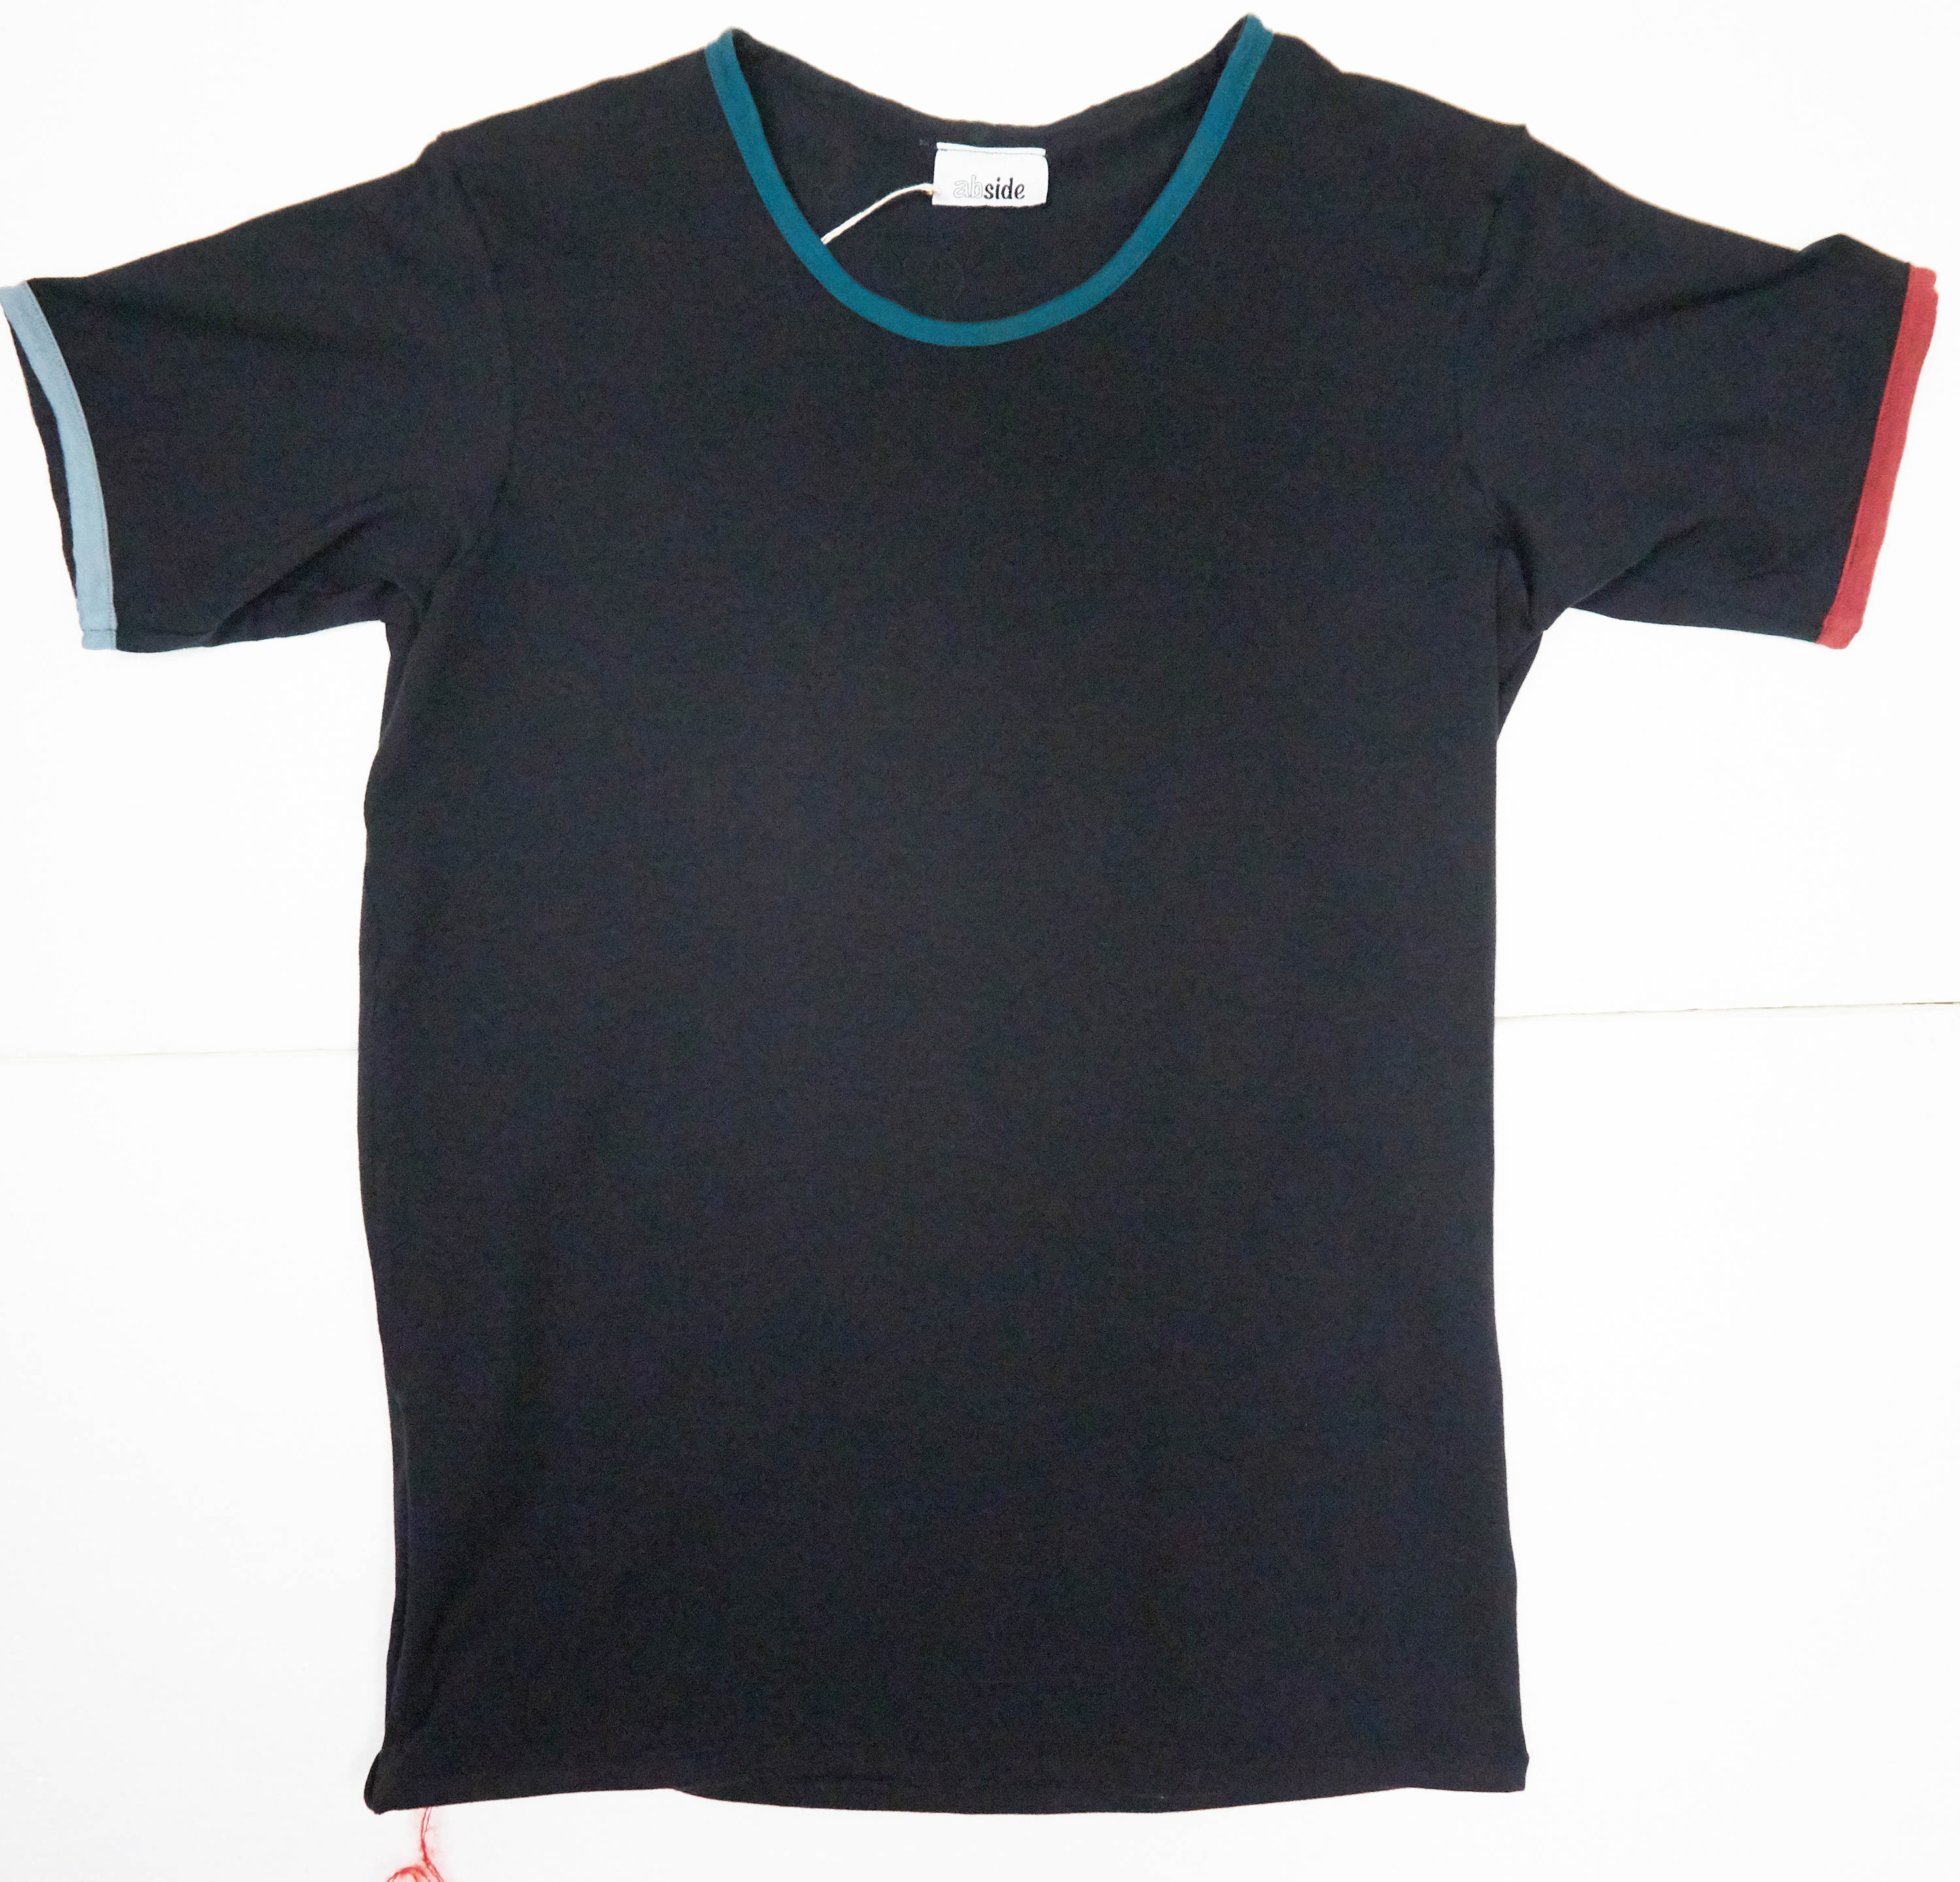 Maglietta in cotone biologico con inserti. Colore nero e inserti rosso, ottanio e azzurro